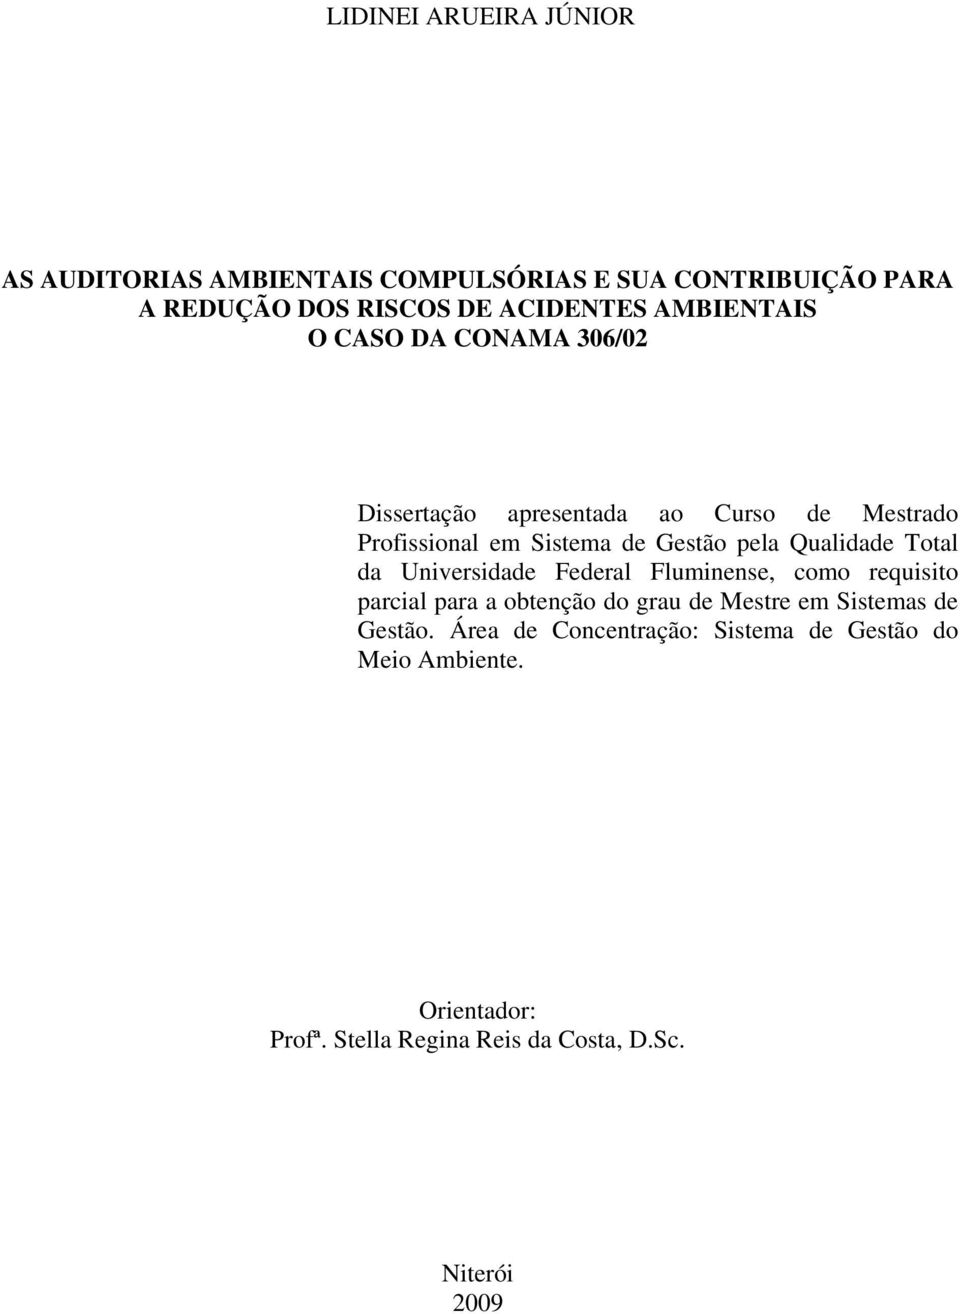 Qualidade Total da Universidade Federal Fluminense, como requisito parcial para a obtenção do grau de Mestre em Sistemas de